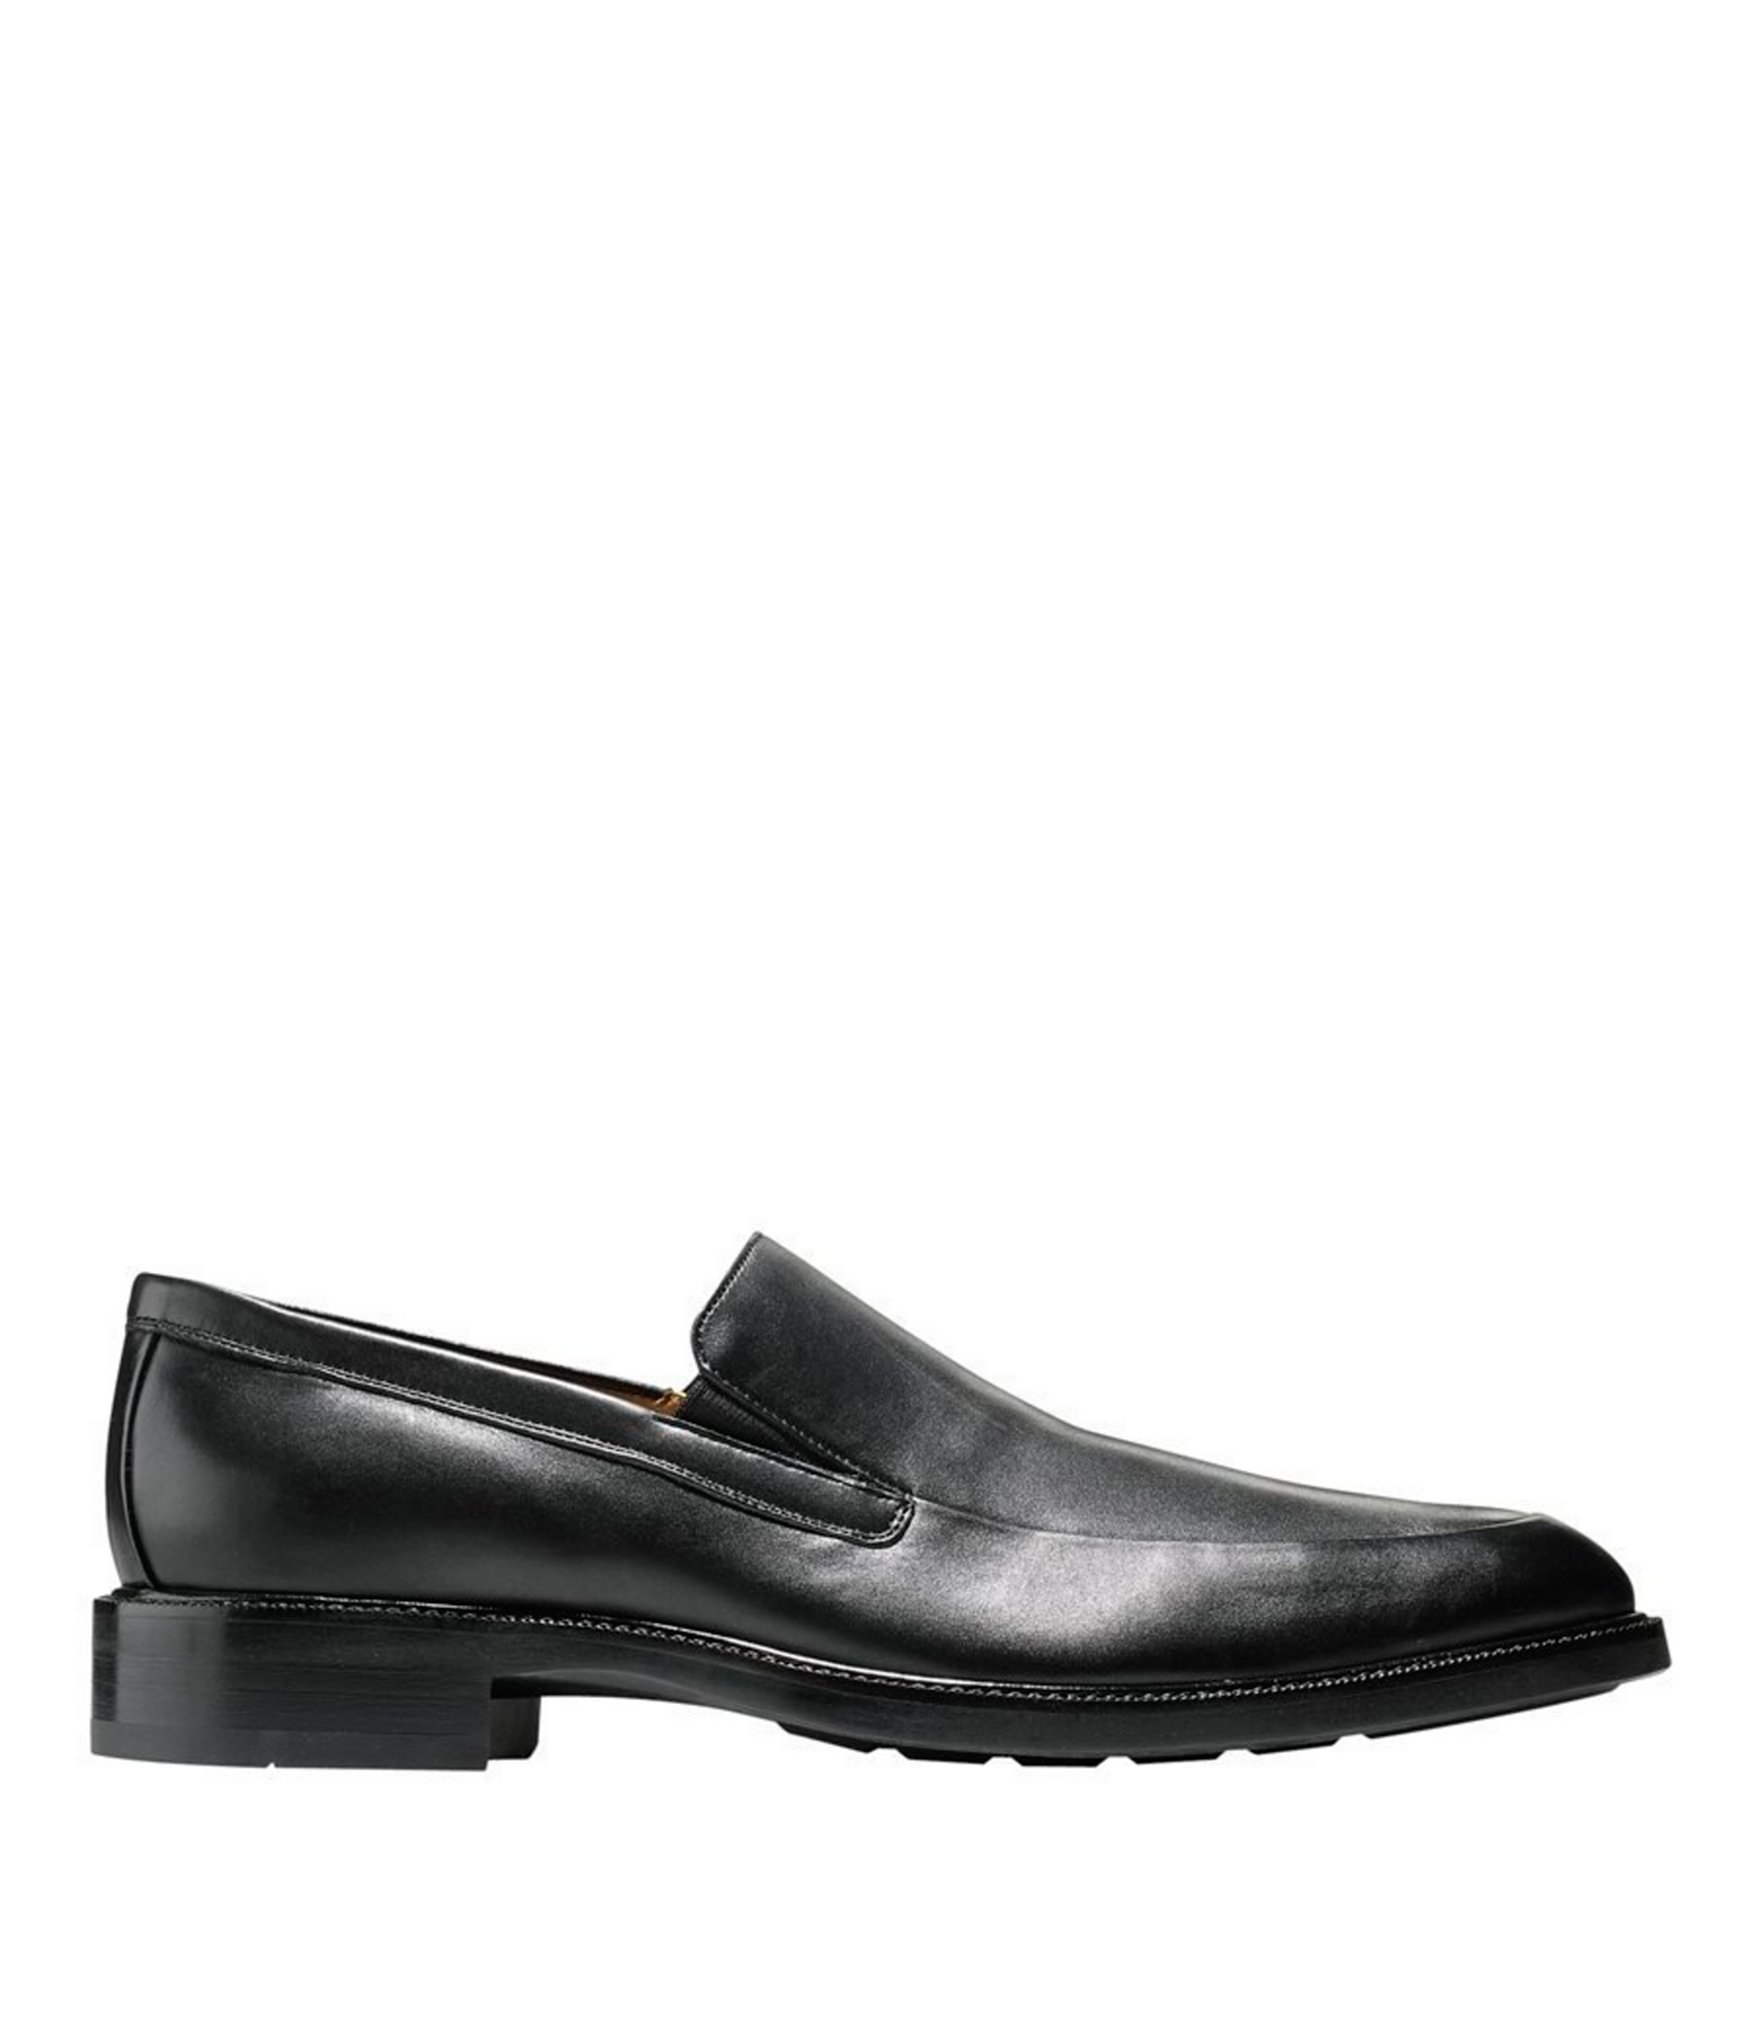 Lyst - Cole Haan Warren Grand Venetian Loafers in Black for Men